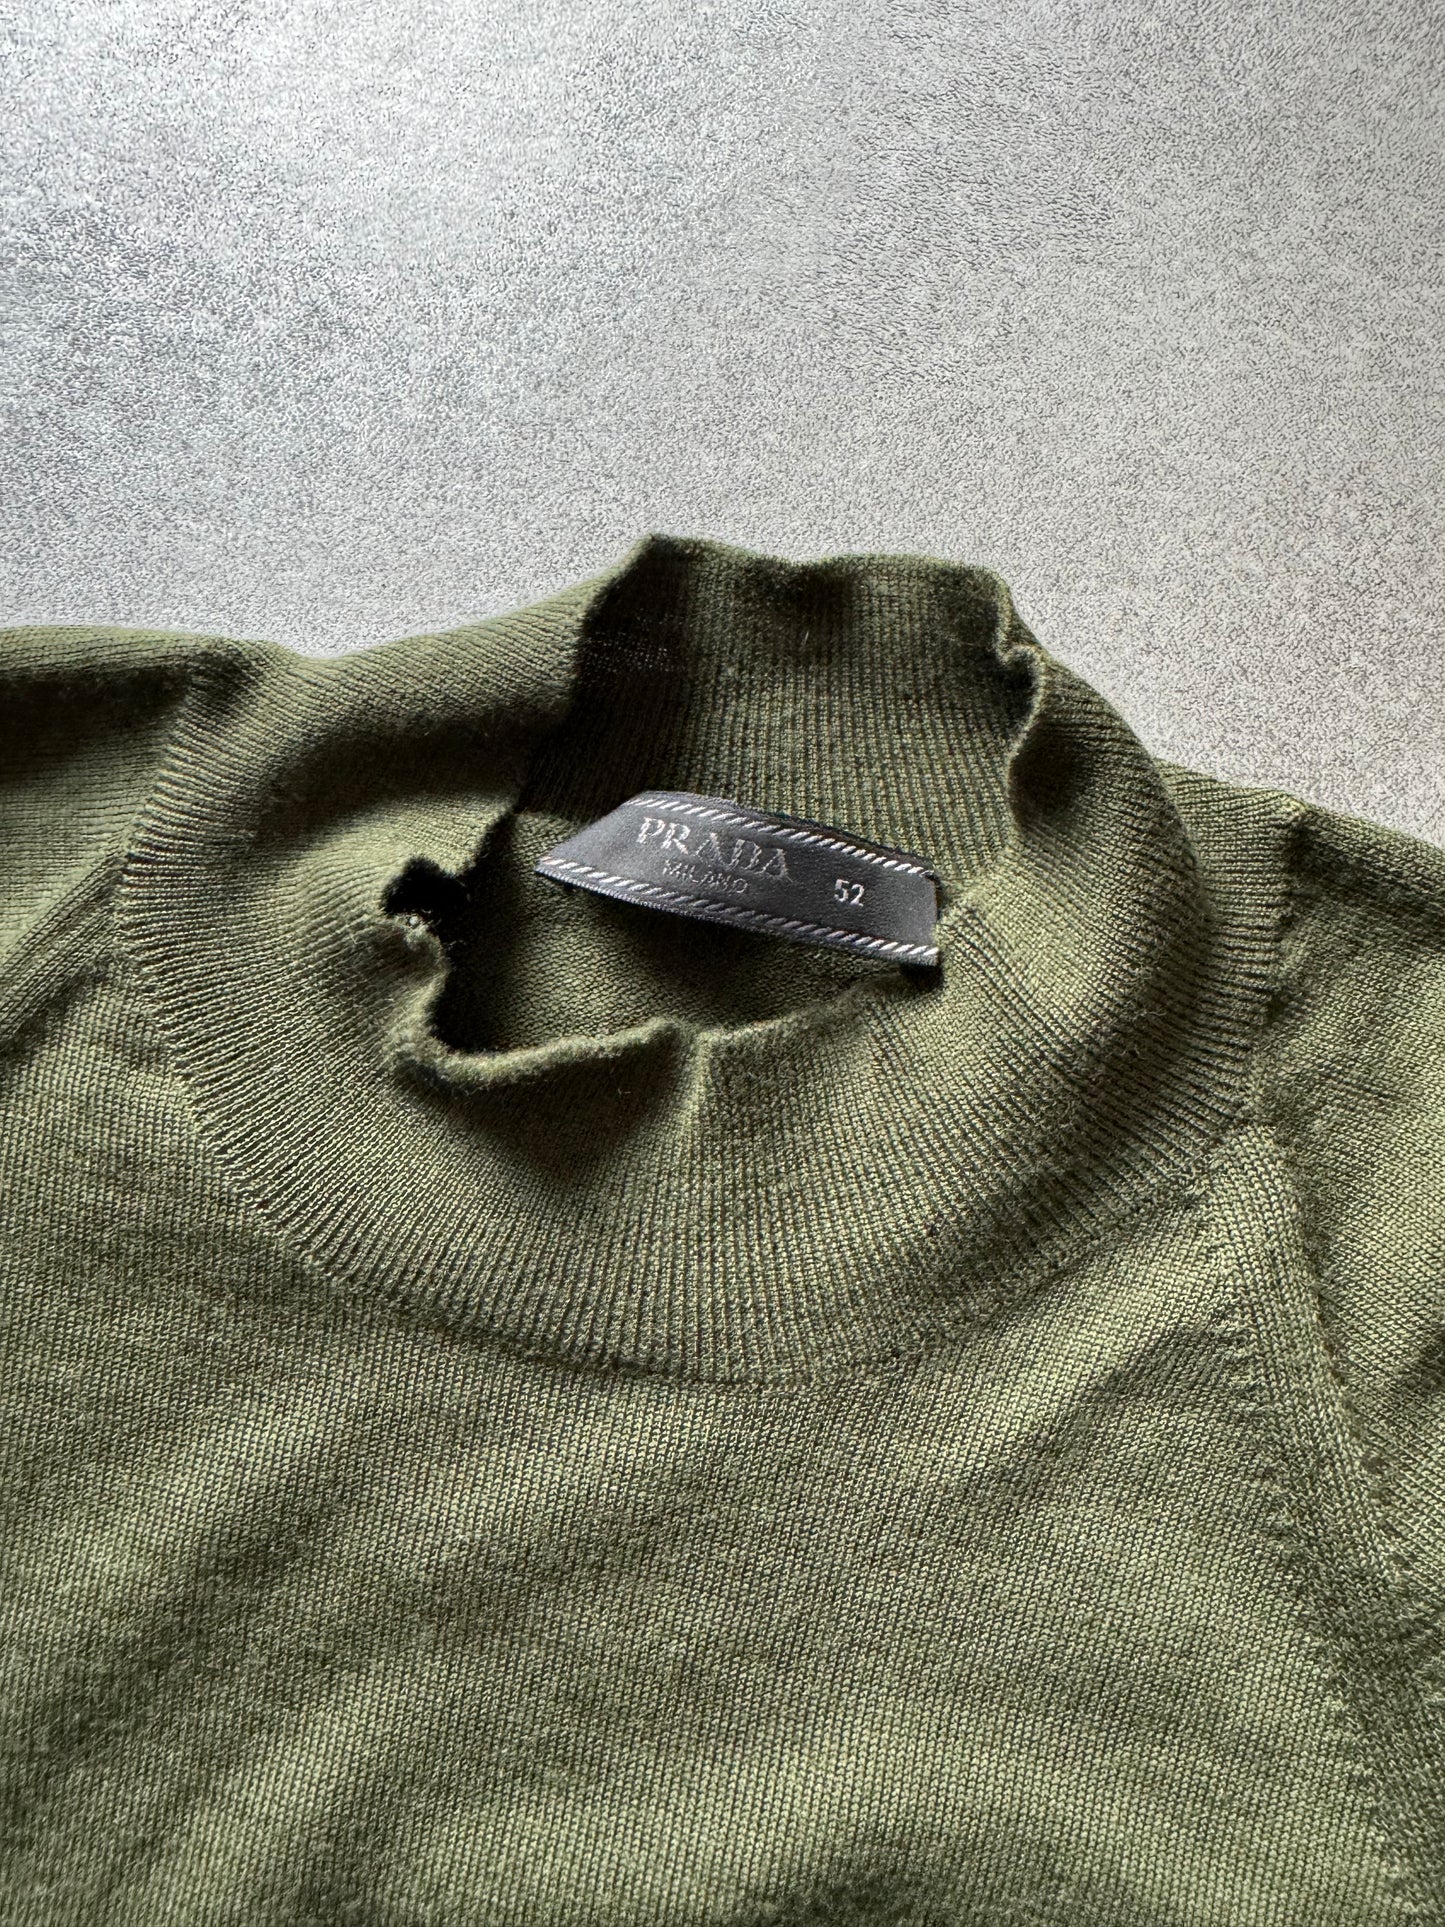 FW2019 Prada Wool Olive Sweater  (L) - 7